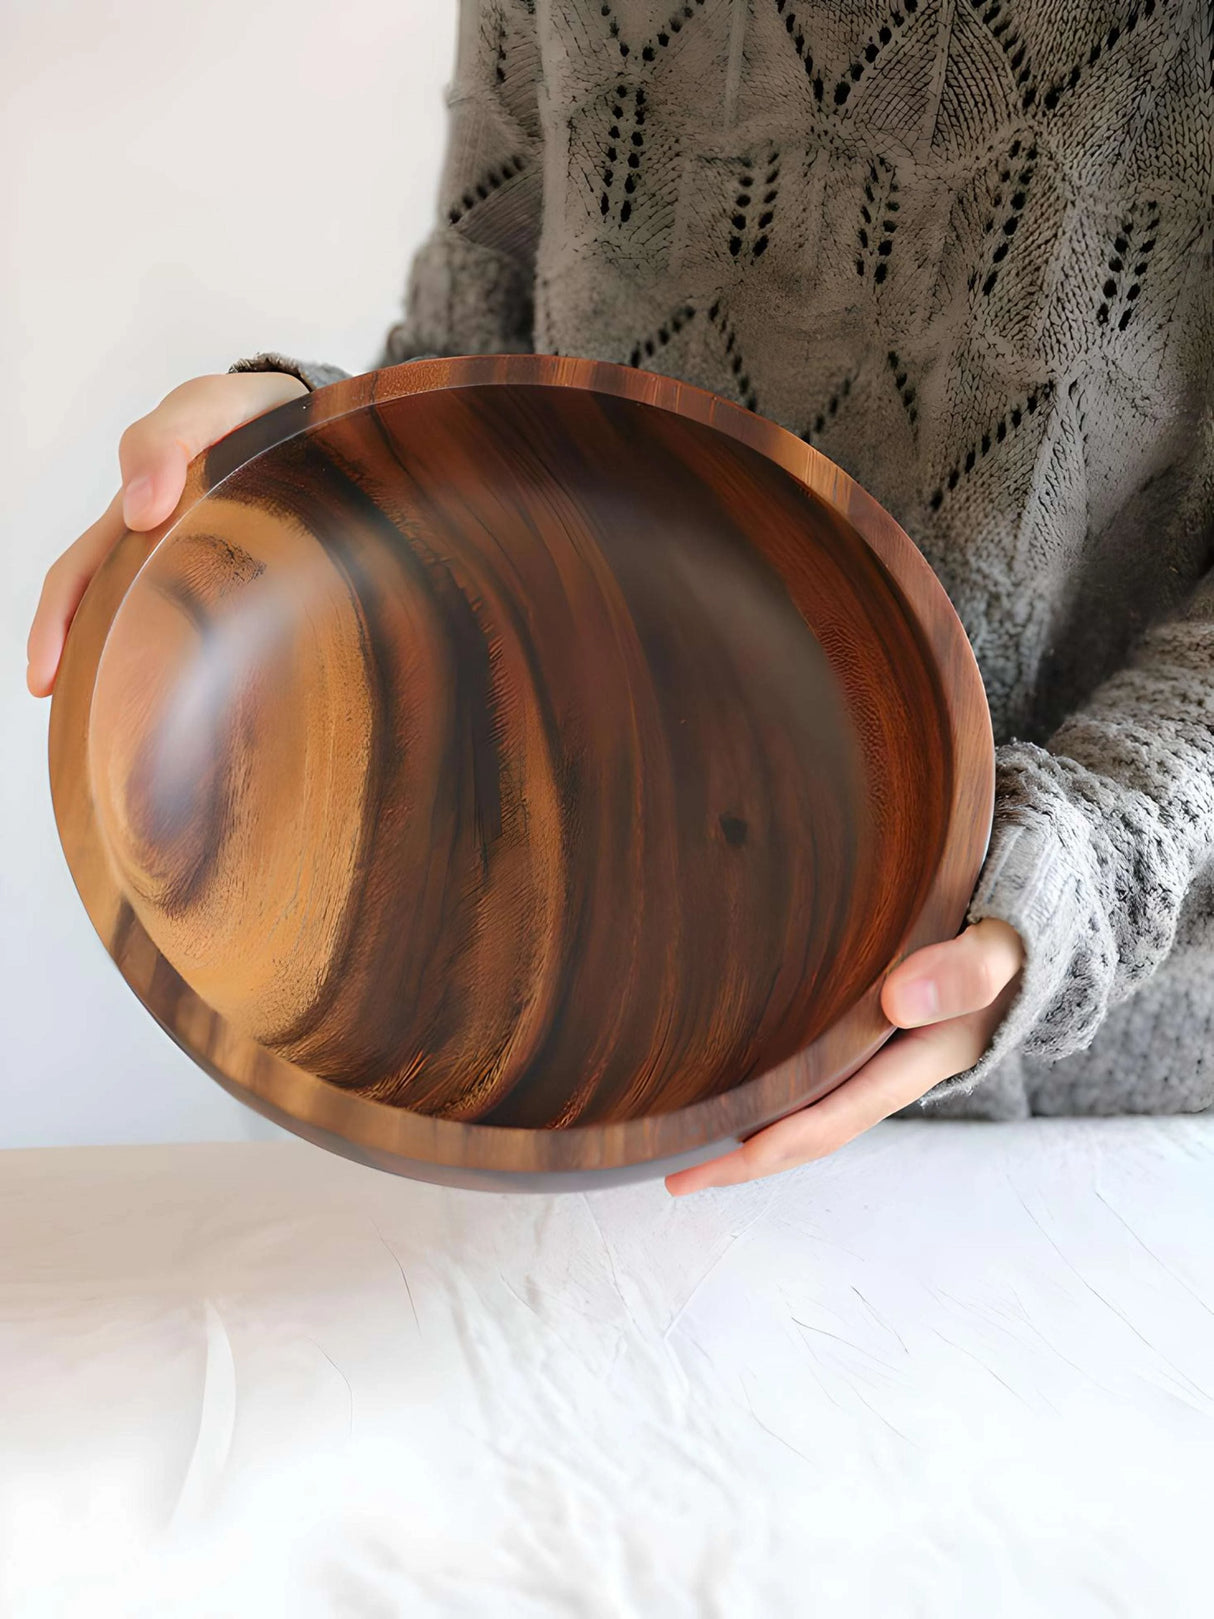 Acacia Wood Tableware Set Acacia Wood Tableware Set CJJJCFCJ01965-Brown-10X6cm wooden bowls 18